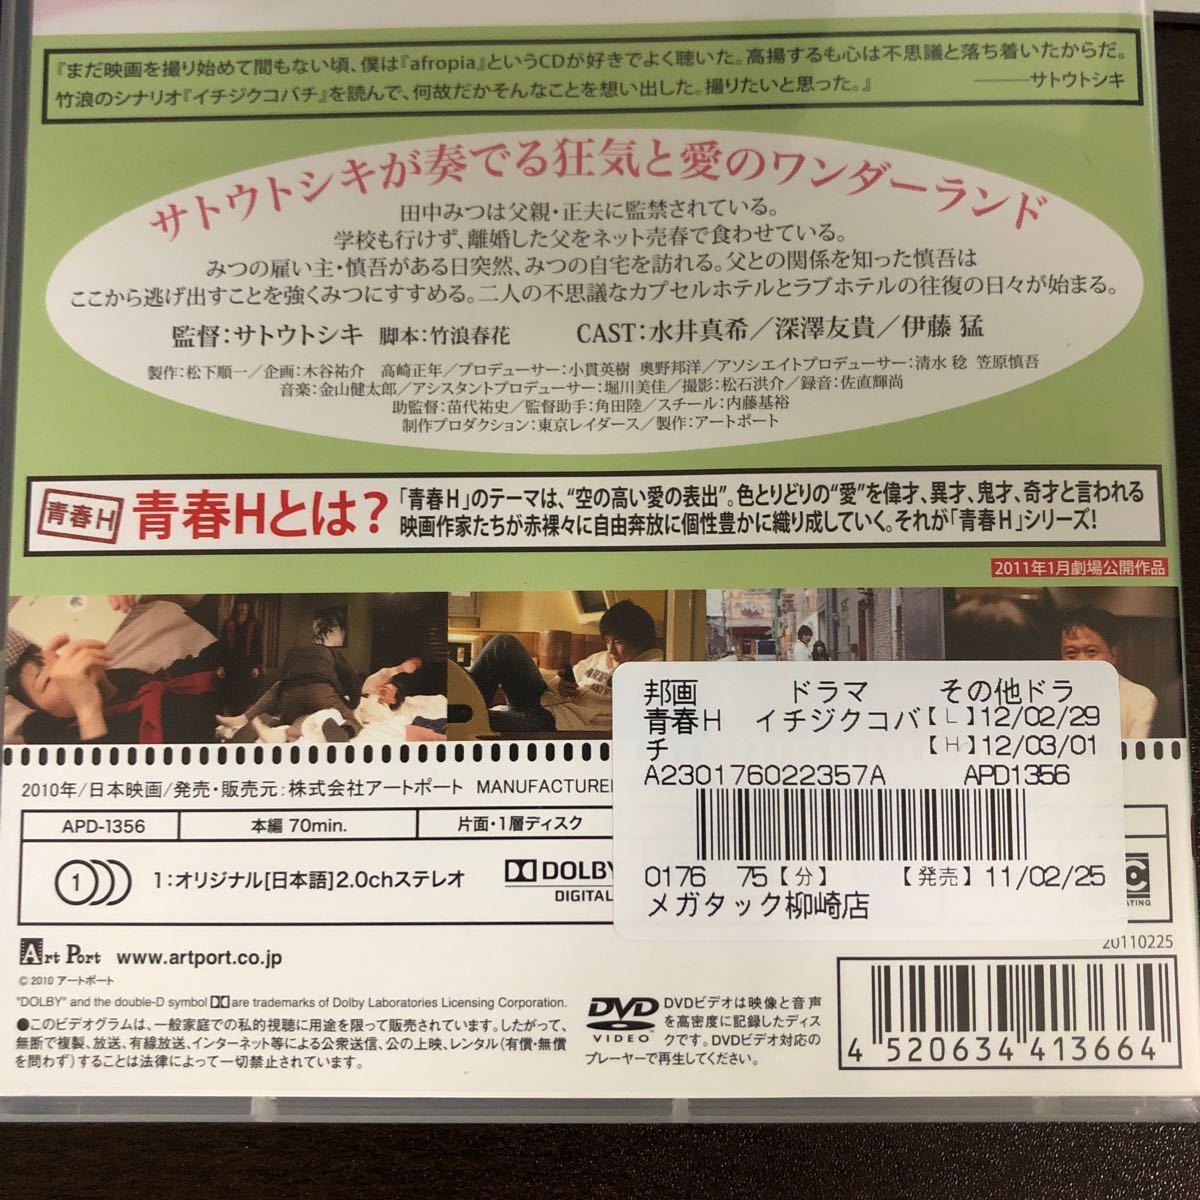 『イチジクコバチ 青春H』サトウトシキ/水井真希/吉谷彩子 (DVD/アートポート)【送料無料】